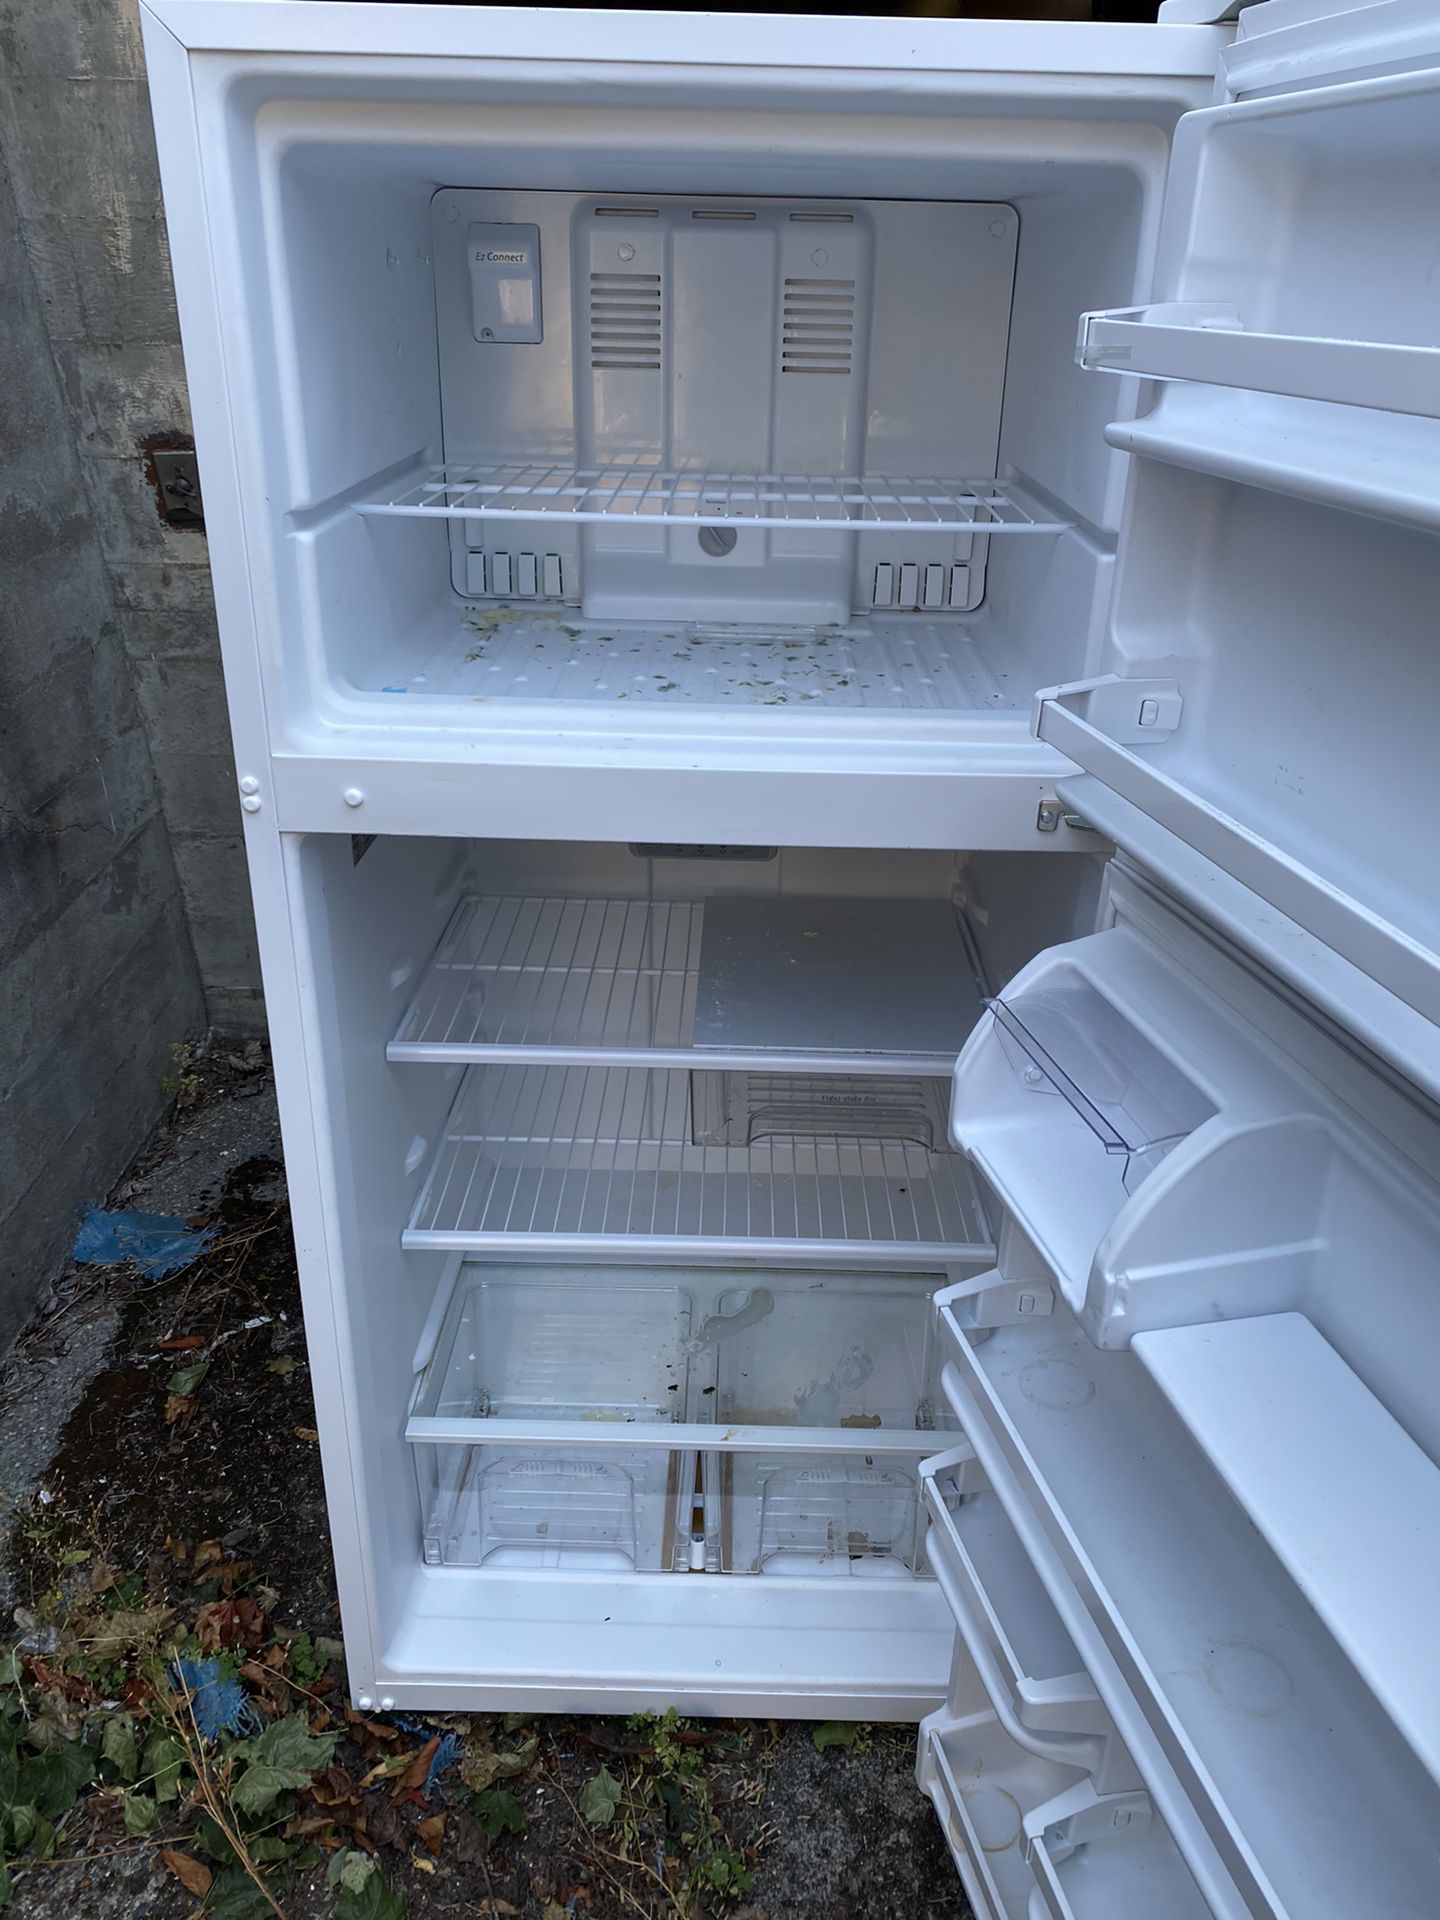 Free refrigerator.